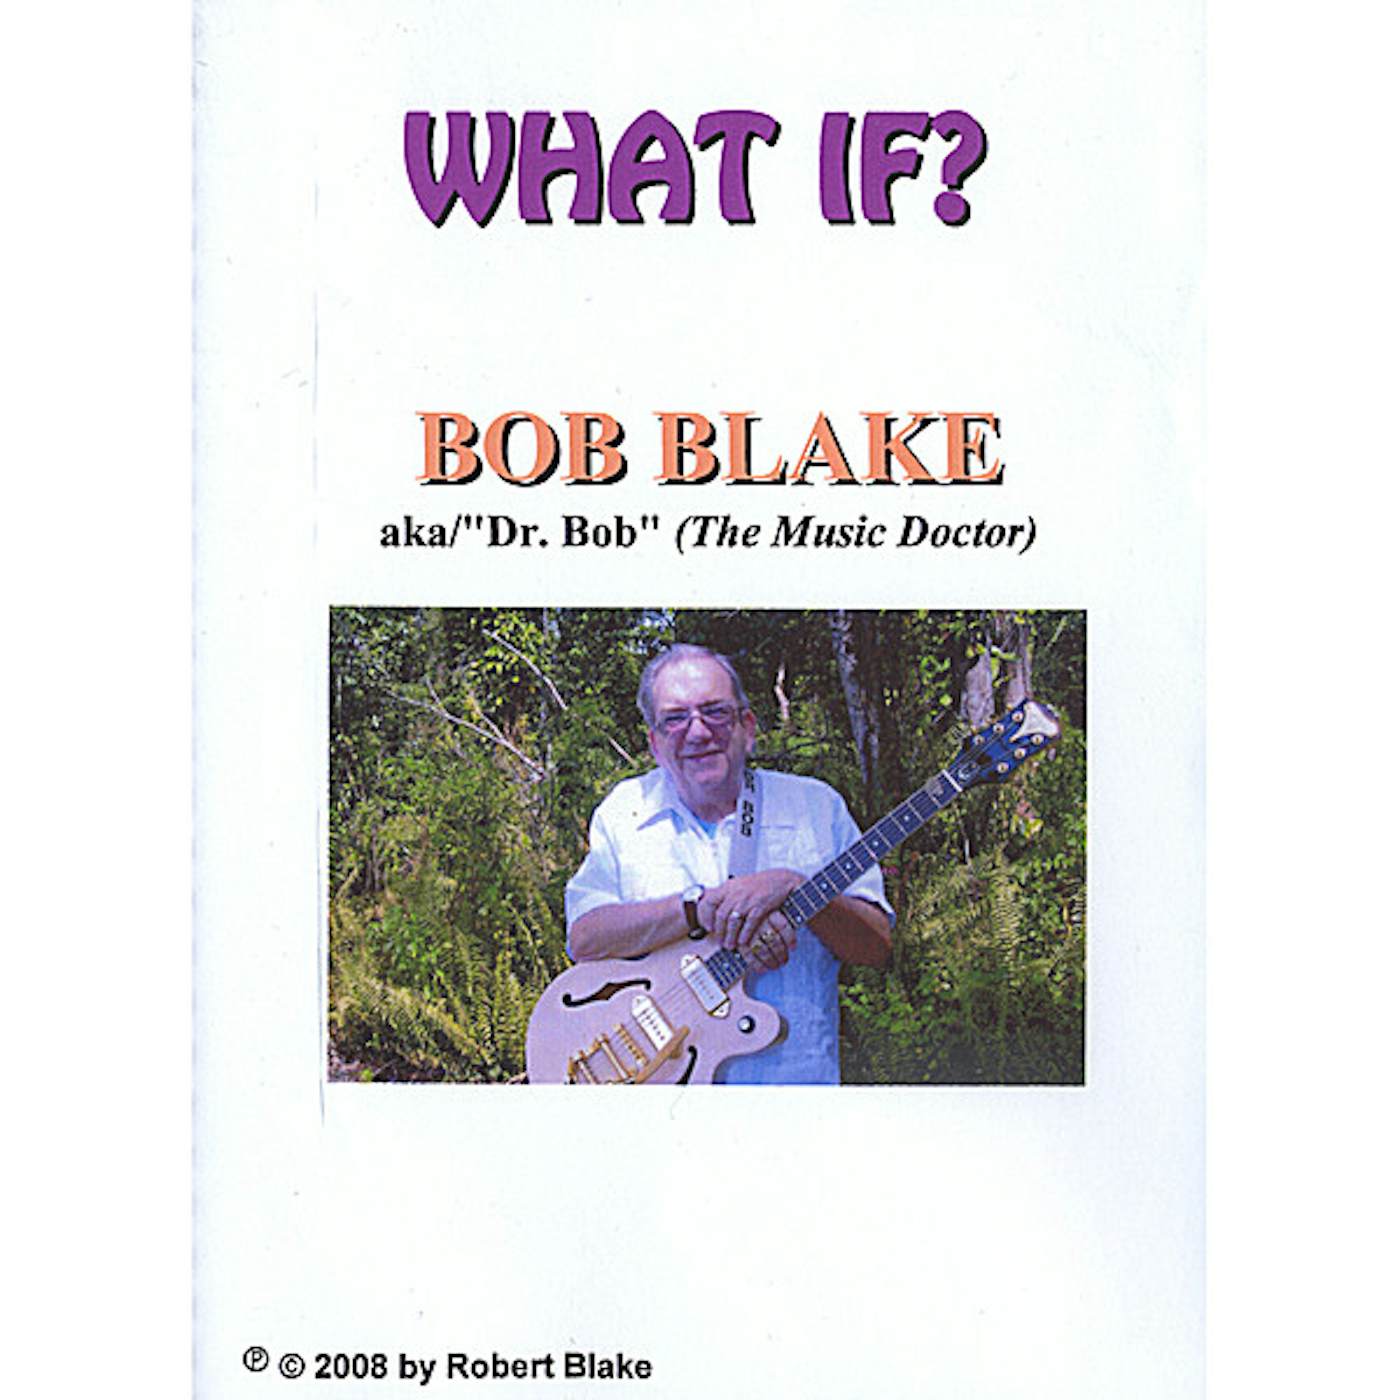 Robert Blake WHAT IF CD